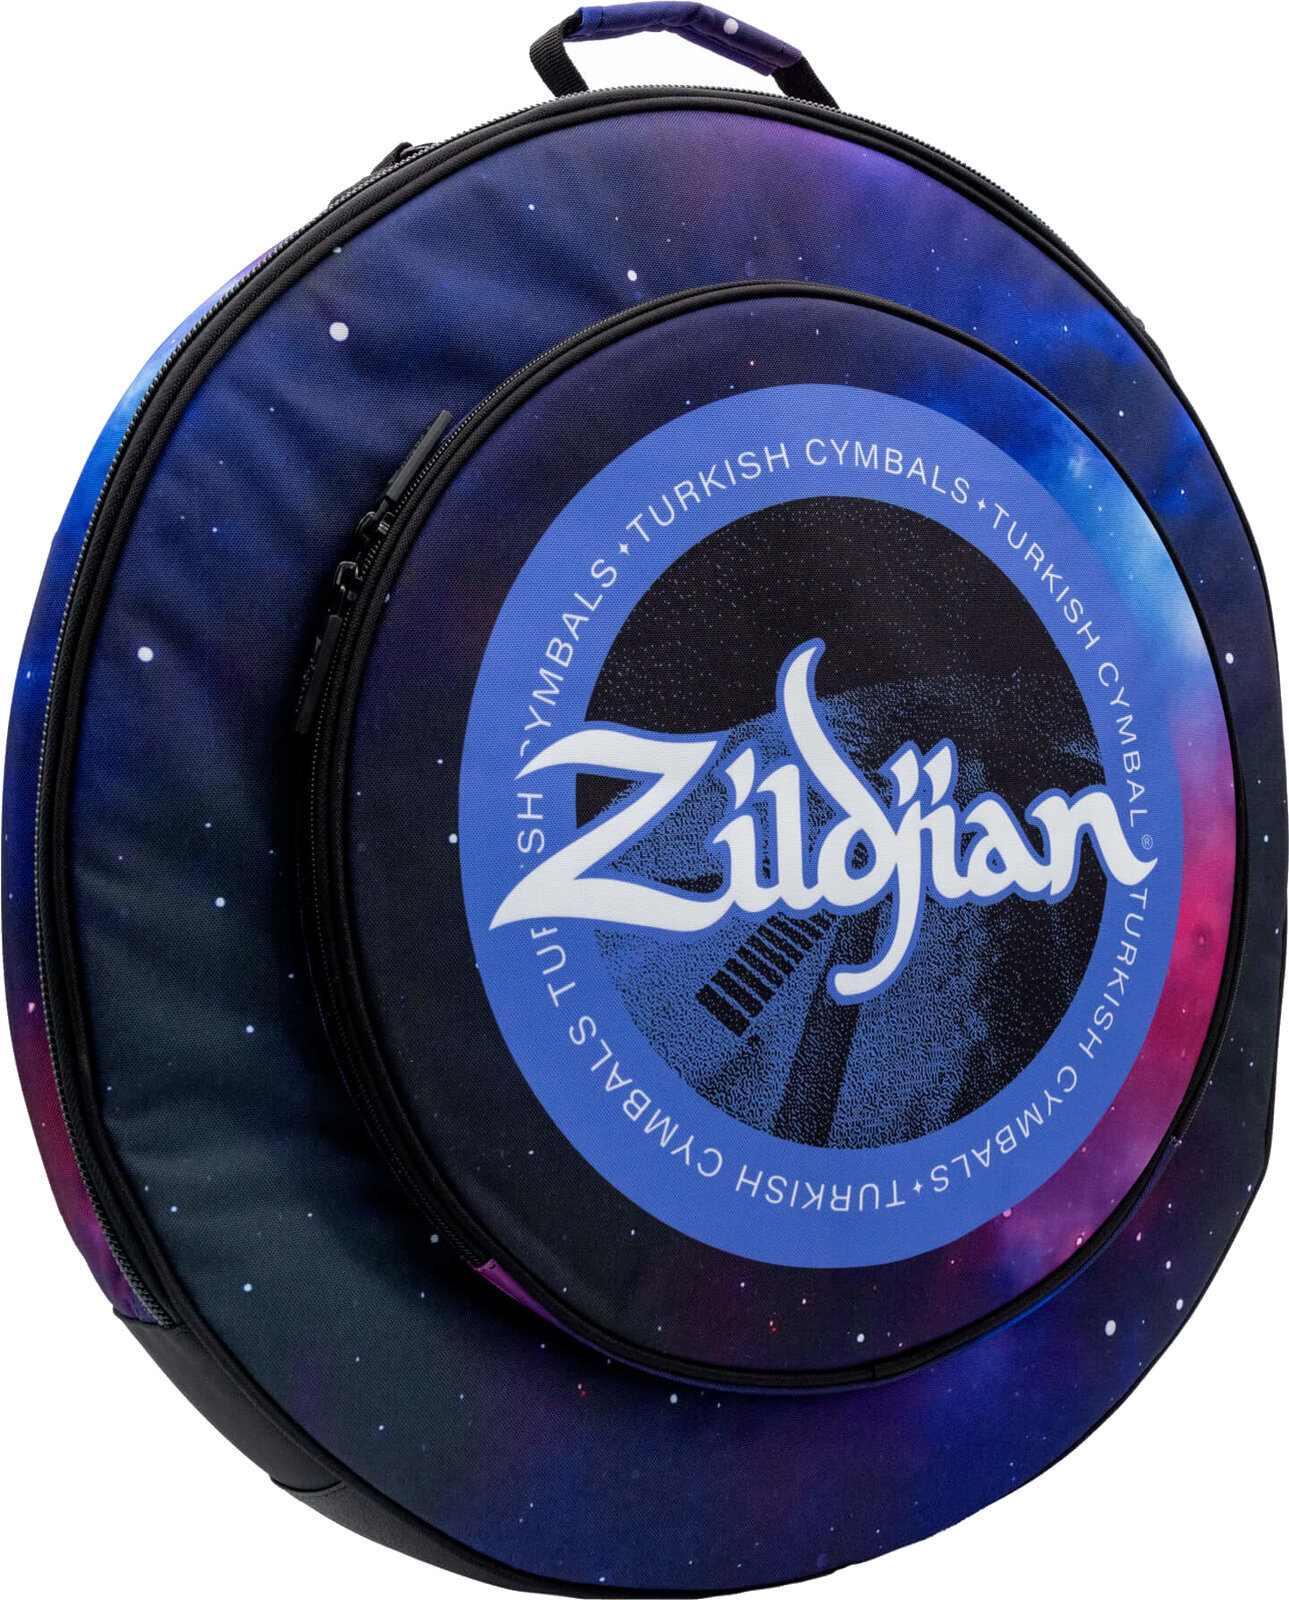 Beckentasche Zildjian 20" Student Cymbal Bag Purple Galaxy Beckentasche